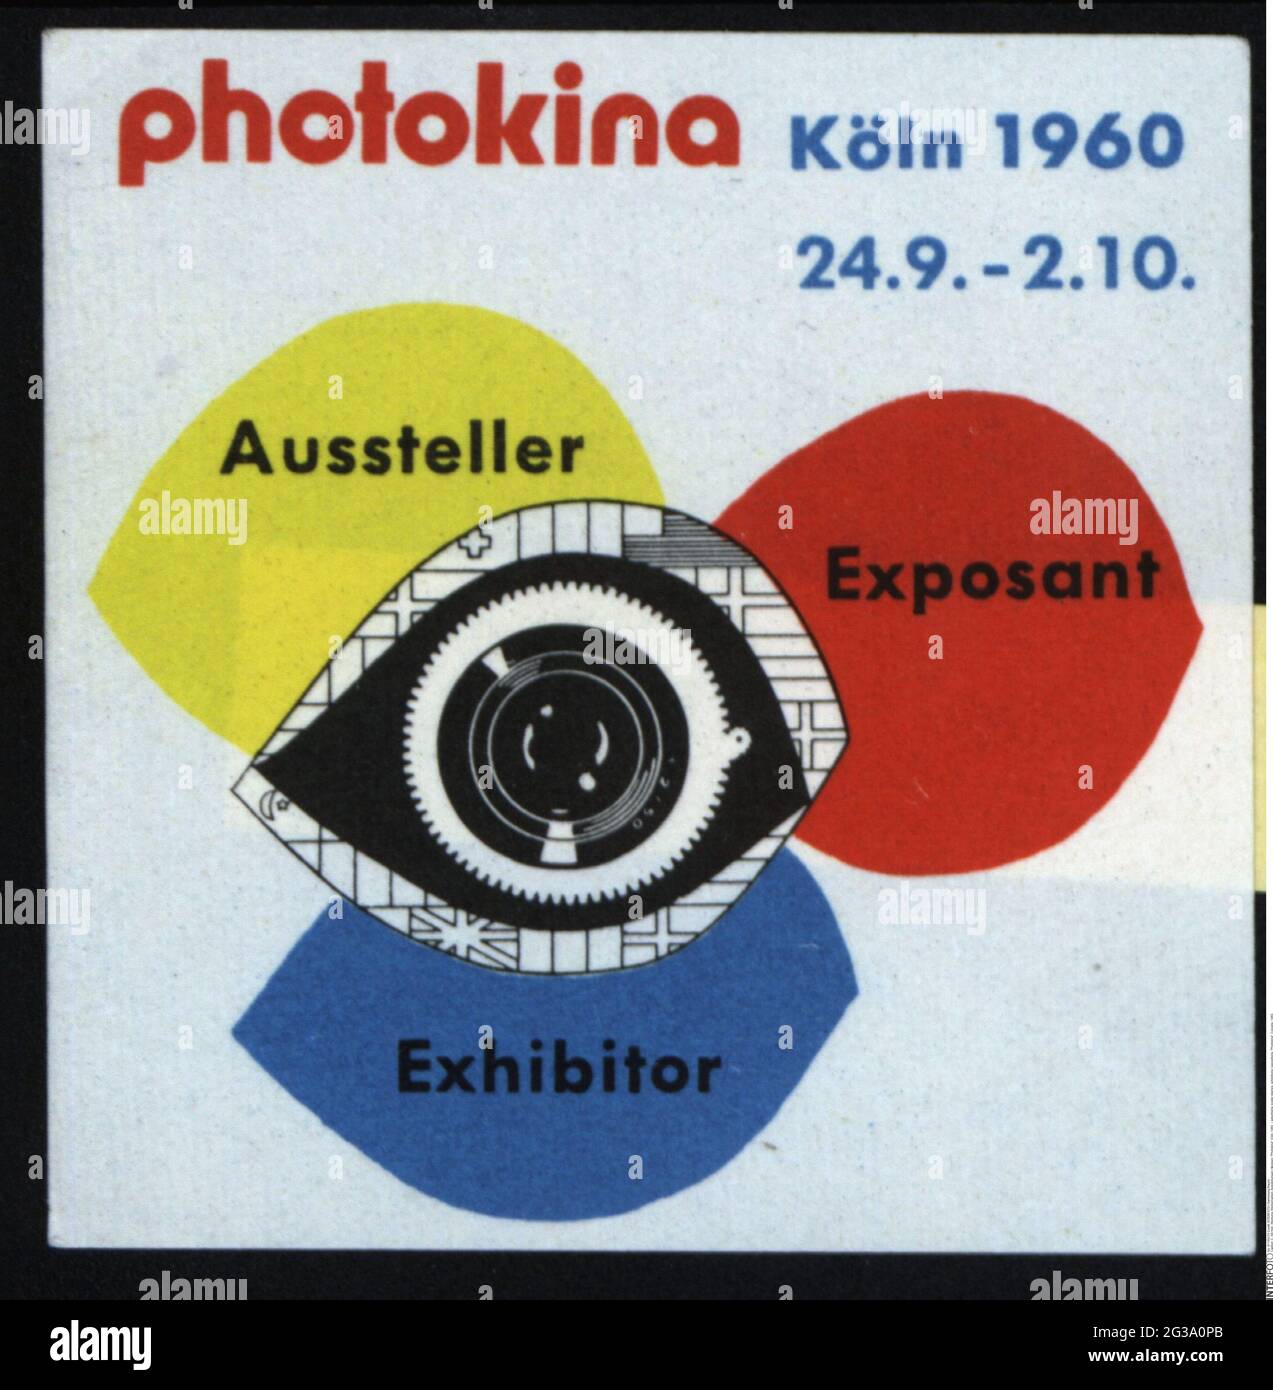 Publicité, timbres-affiches, expositions / expositions, « Photokina », Cologne, 1960, INFO-AUTORISATION-DROITS-SUPPLÉMENTAIRES-NON-DISPONIBLE Banque D'Images